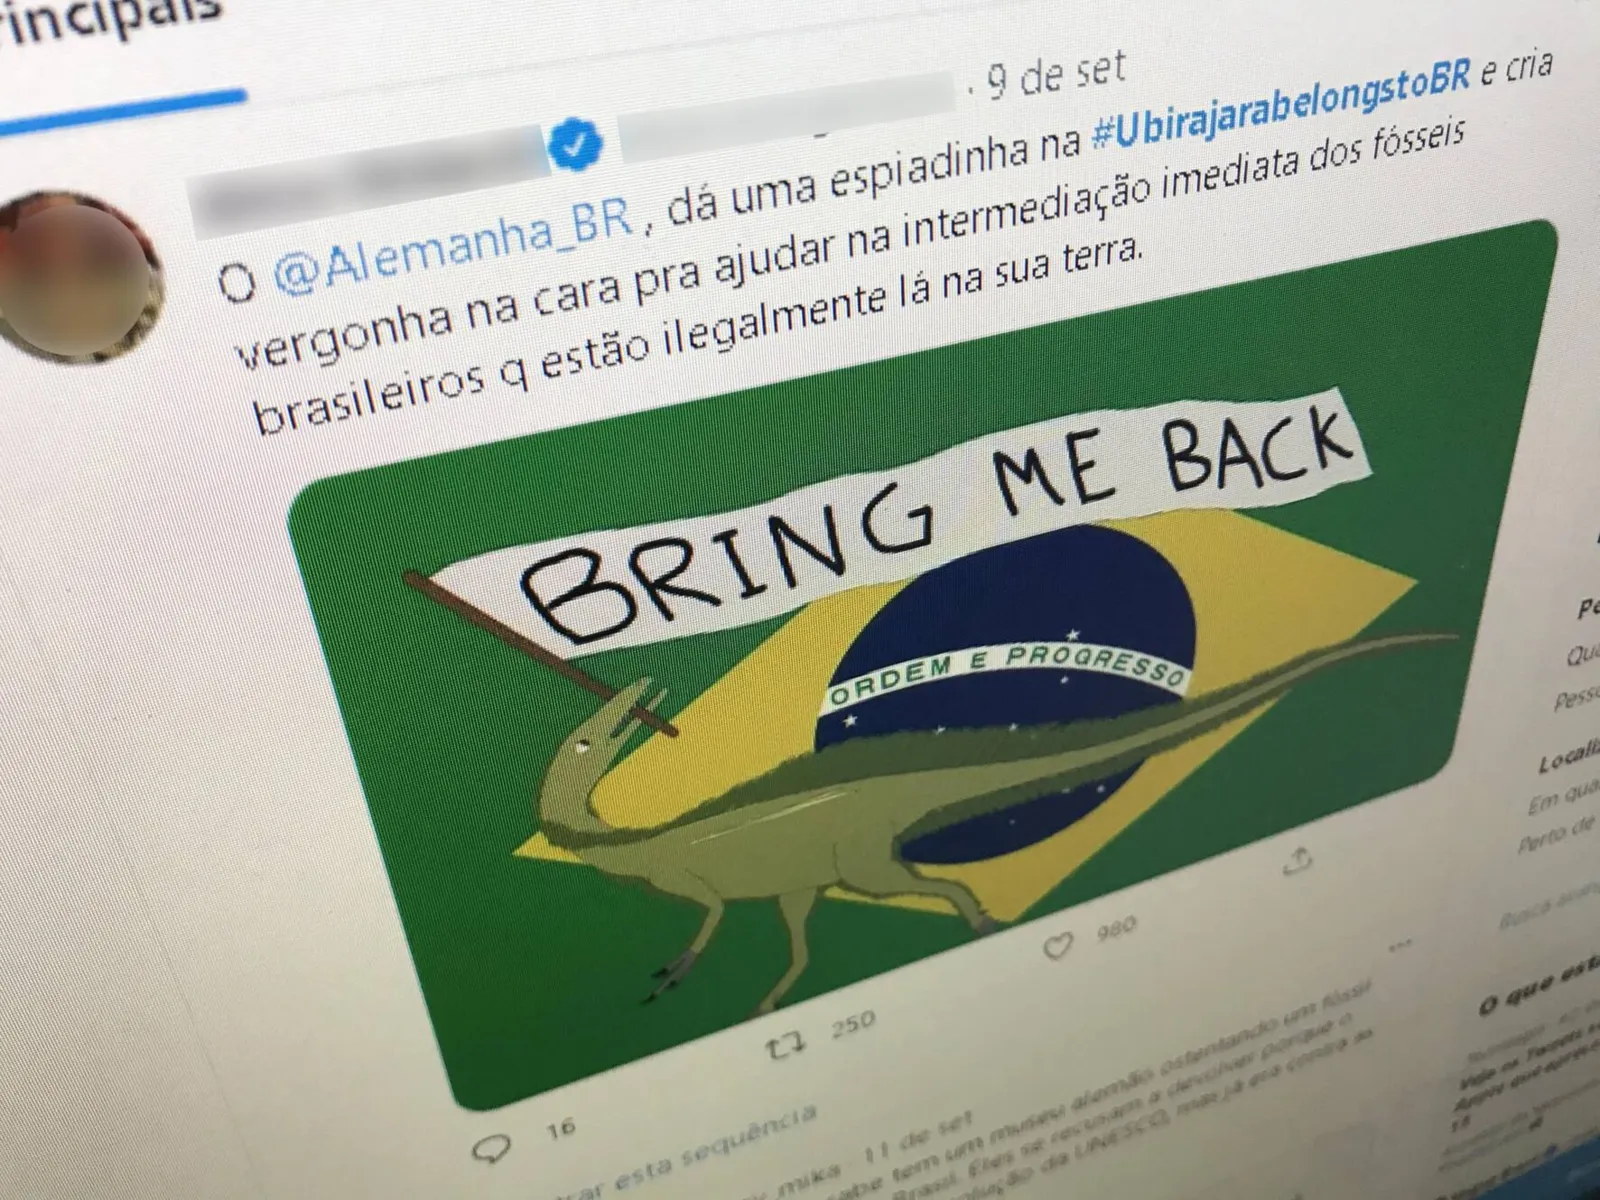 Comunidade científica brasileira "invadiu" a internet com a  campanha #UbirajaraBelongstoBR 